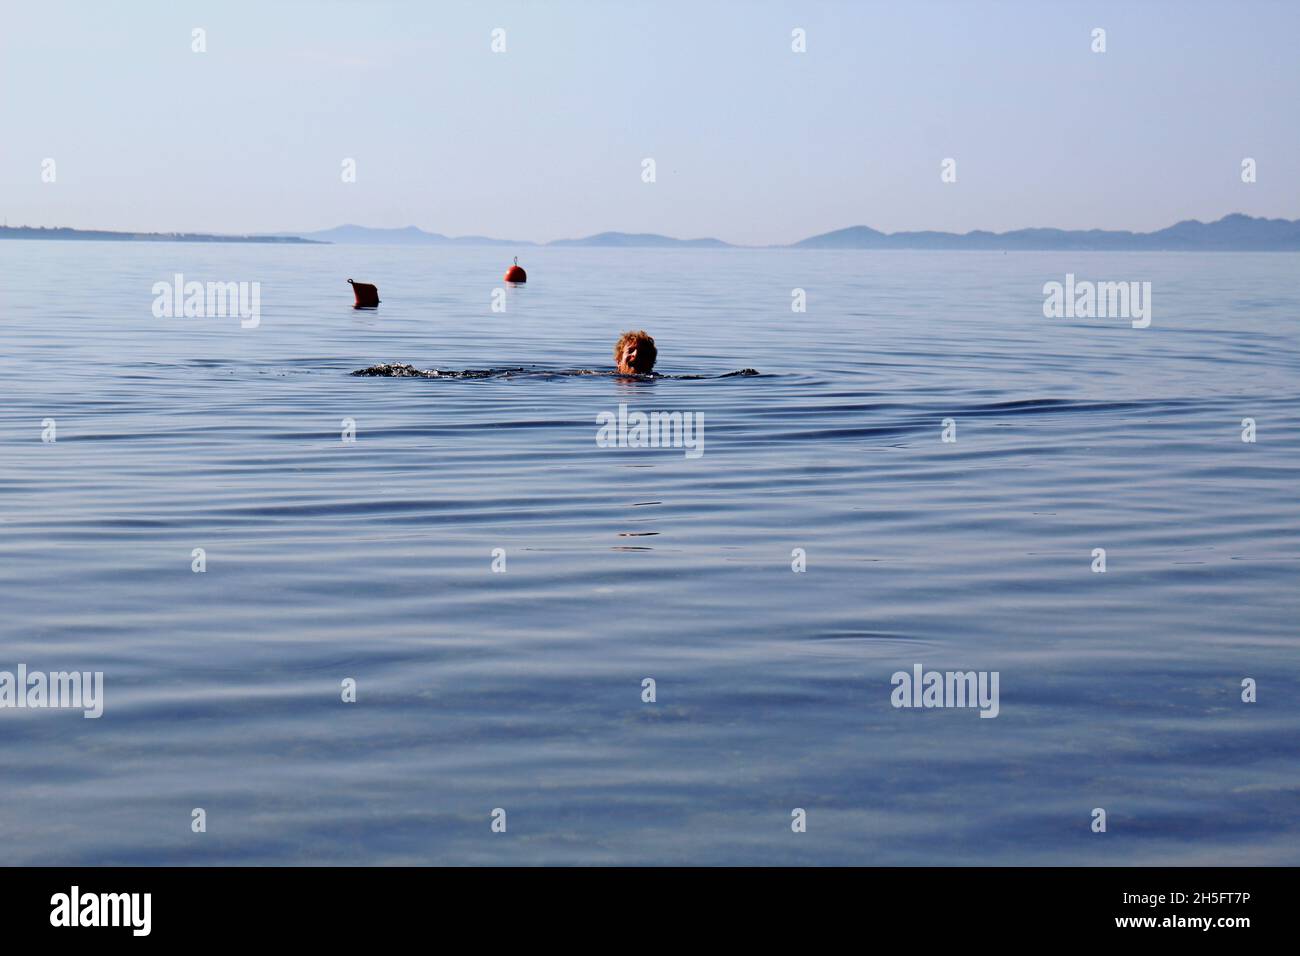 Mann schwimmt im Meer: Kopf eines Mannes, der aus dem Wasser ragt. Sein Gesicht ist schmerzverzerrt / schreiend. Bojen im Hintergrund. Vir, Kroatien. Stock Photo